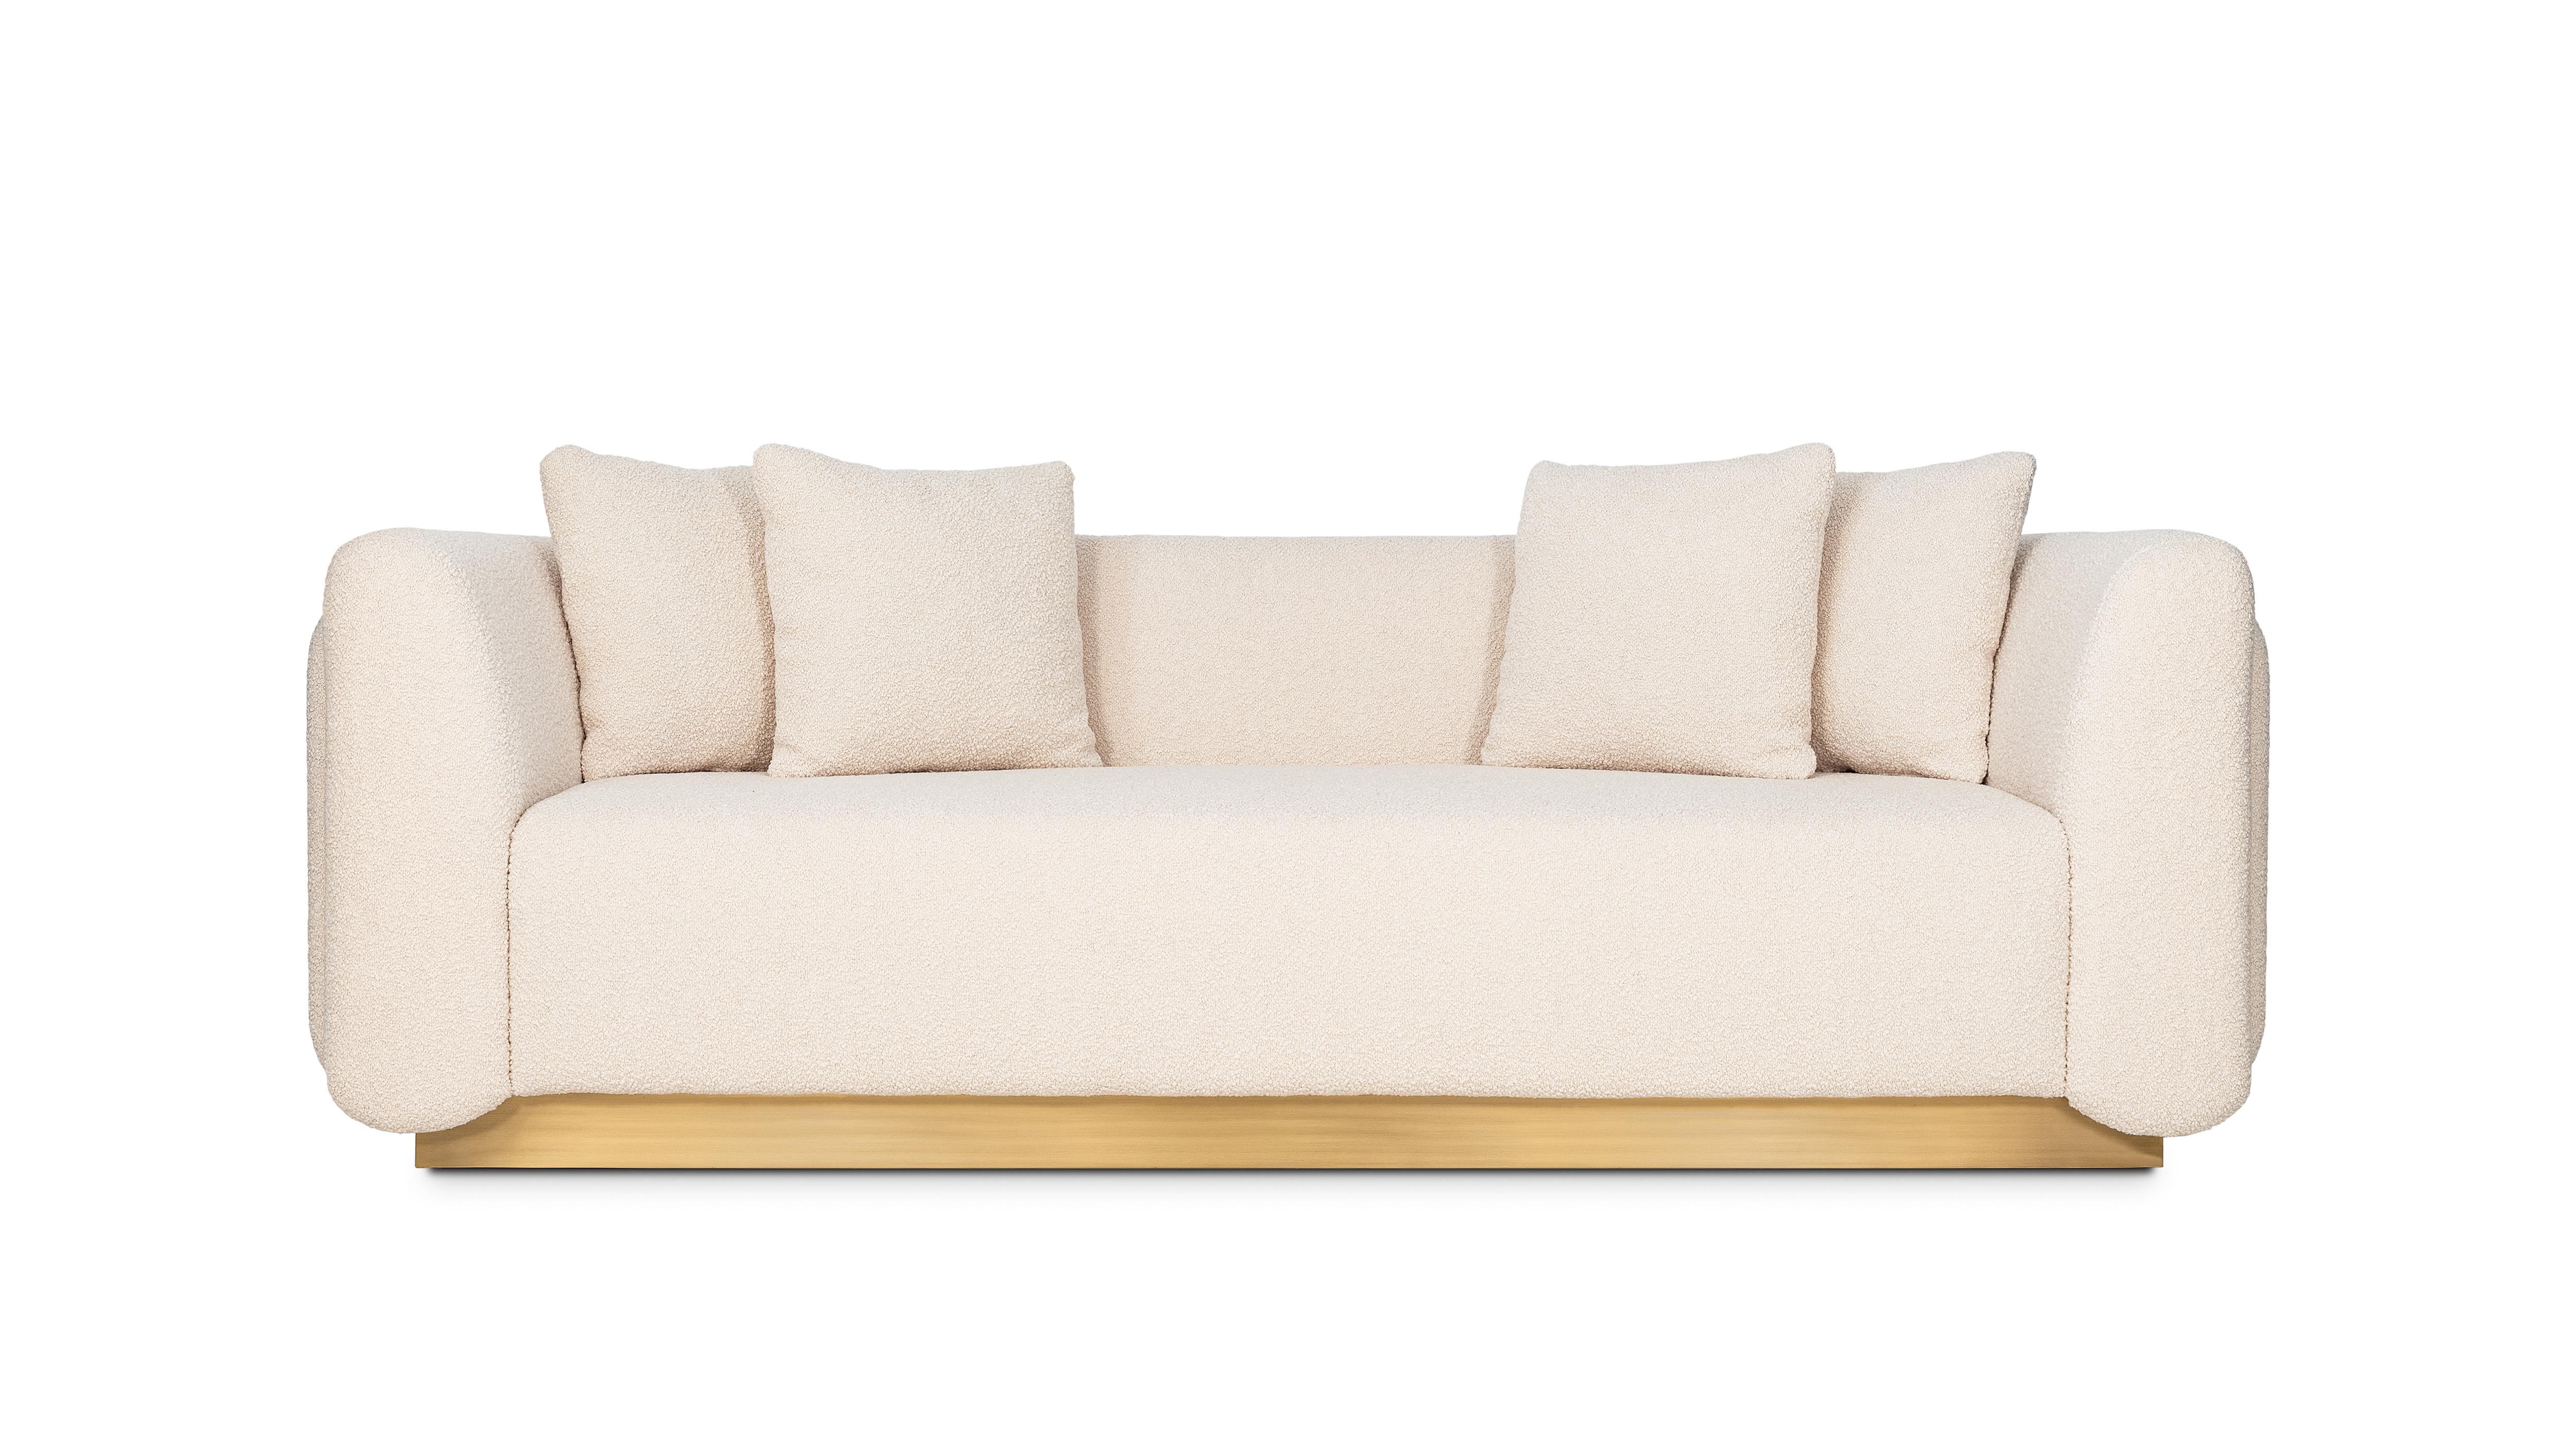 Foz 3-Sitz-Sofa von InsidherLand
Abmessungen: T 96 x B 230 x H 87 cm.
MATERIALIEN: Oxidiertes gebürstetes Messing, InsidherLand Woollen Ref. 6 Stoff.
75 kg.
Erhältlich in verschiedenen Stoffen.
Fünf Kissen sind im Lieferumfang enthalten.

Foz ist